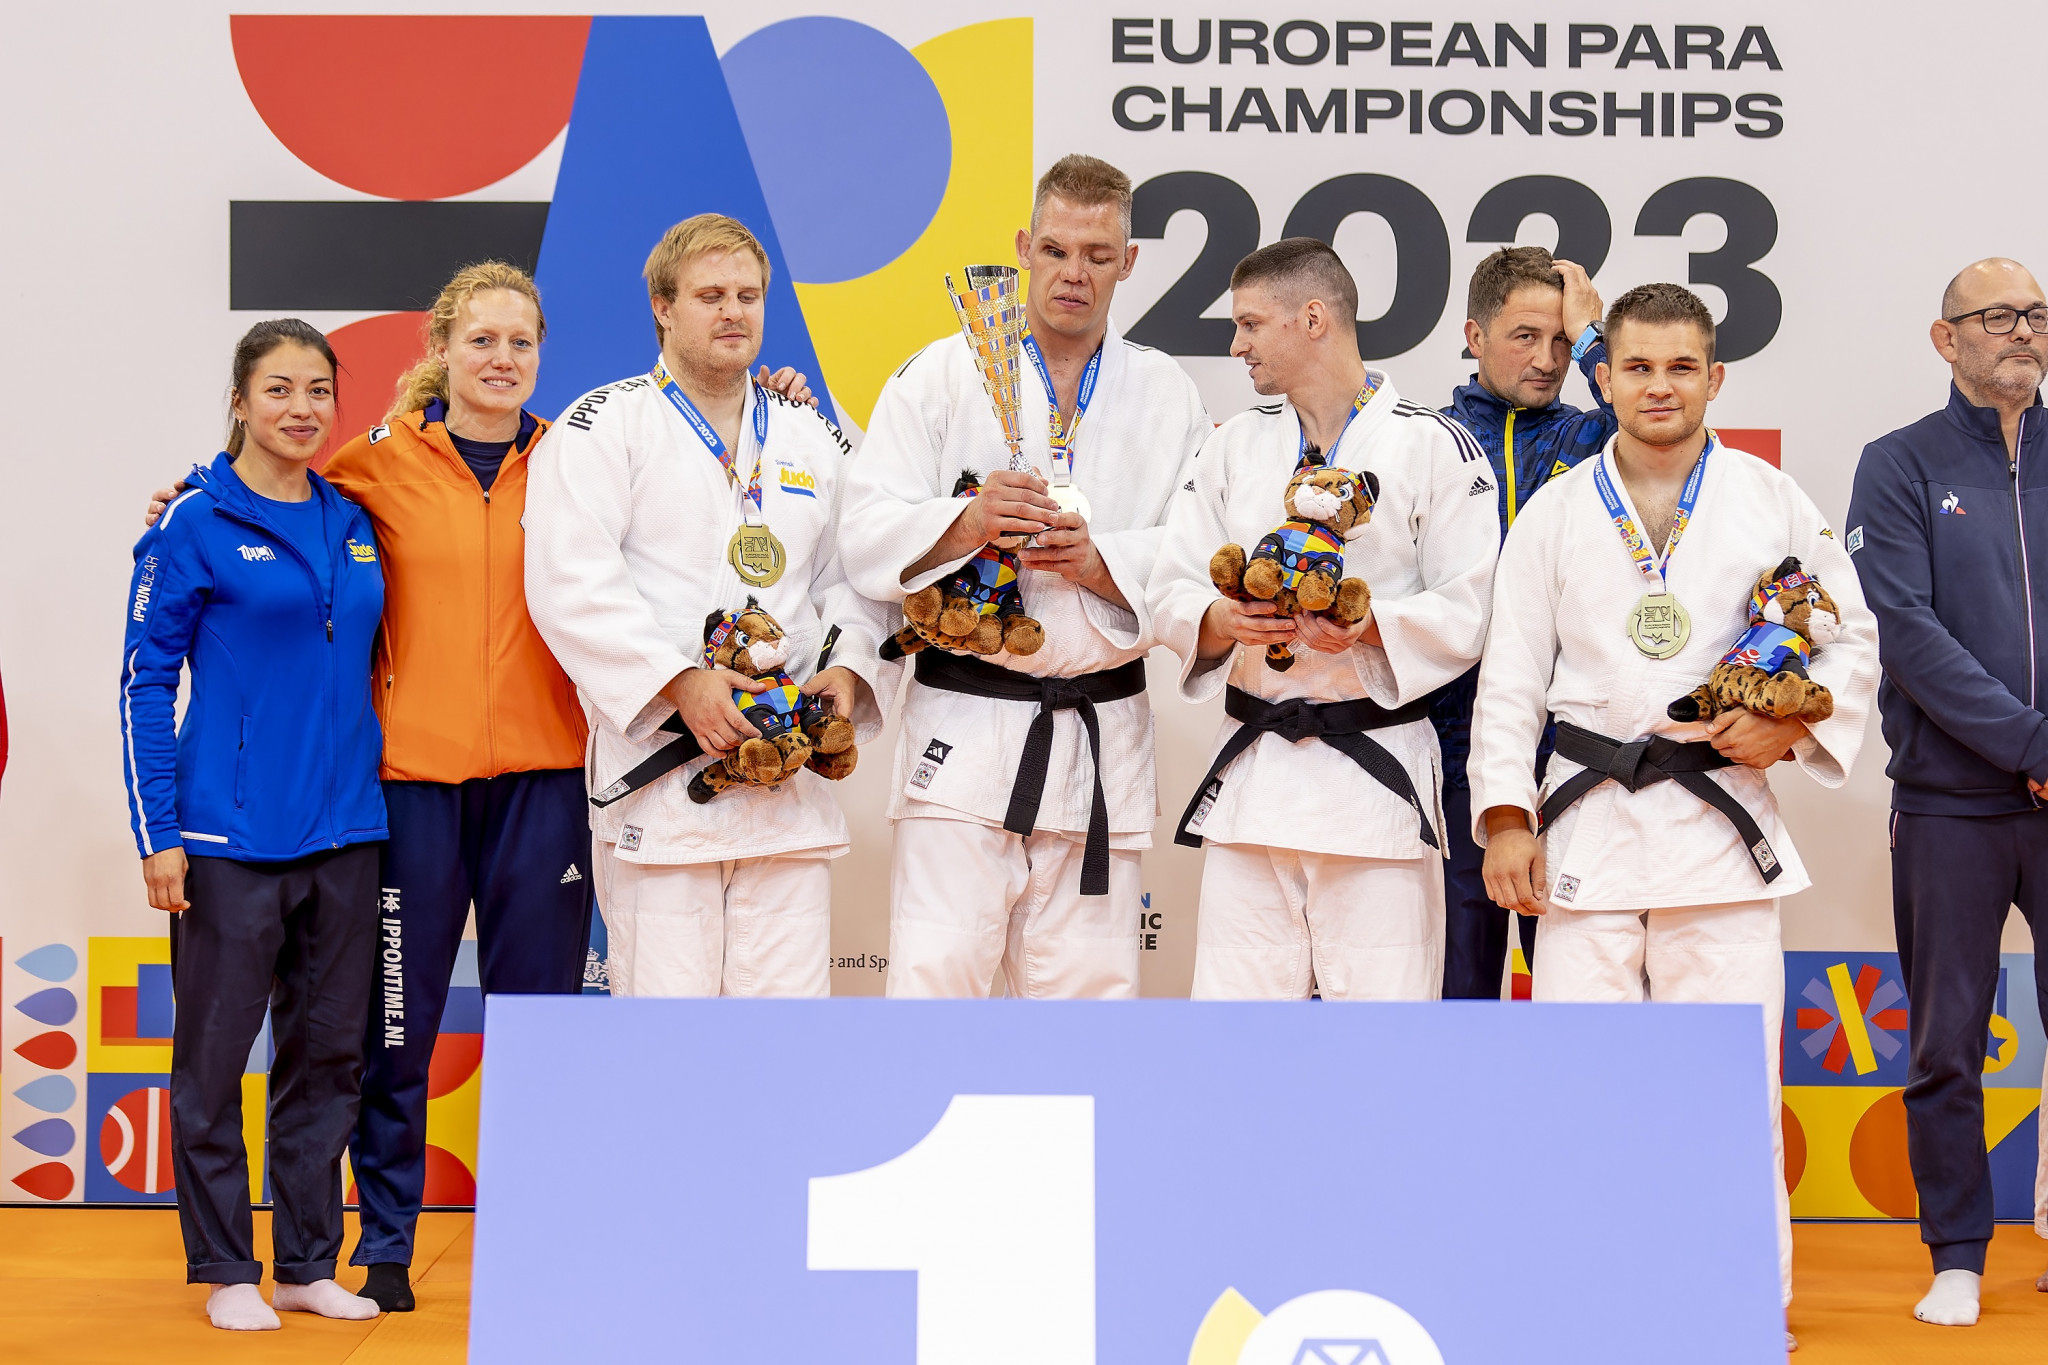 Mixed IBSA team win historic judo gold at European Para Championships despite Turkish anger